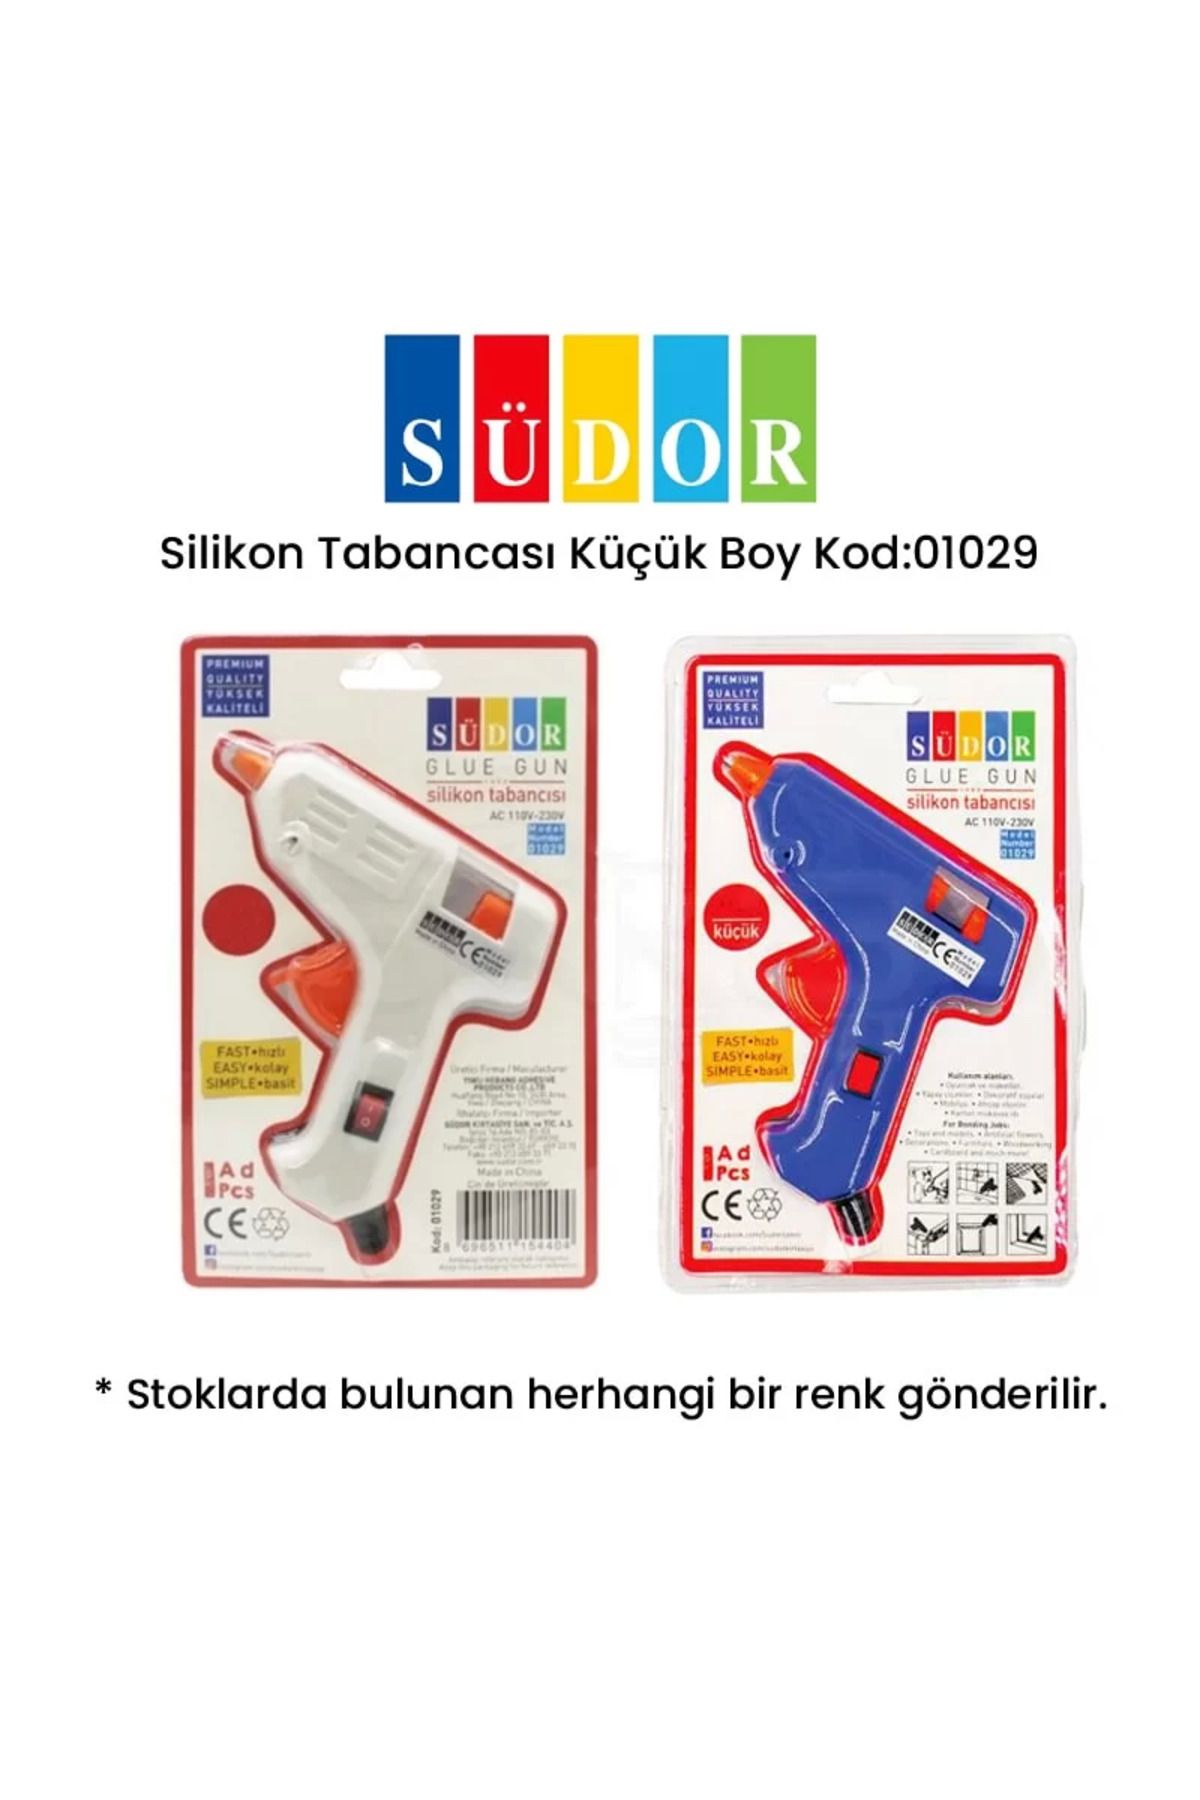 Südor Silikon Tabancası Küçük Boy Kod:01029